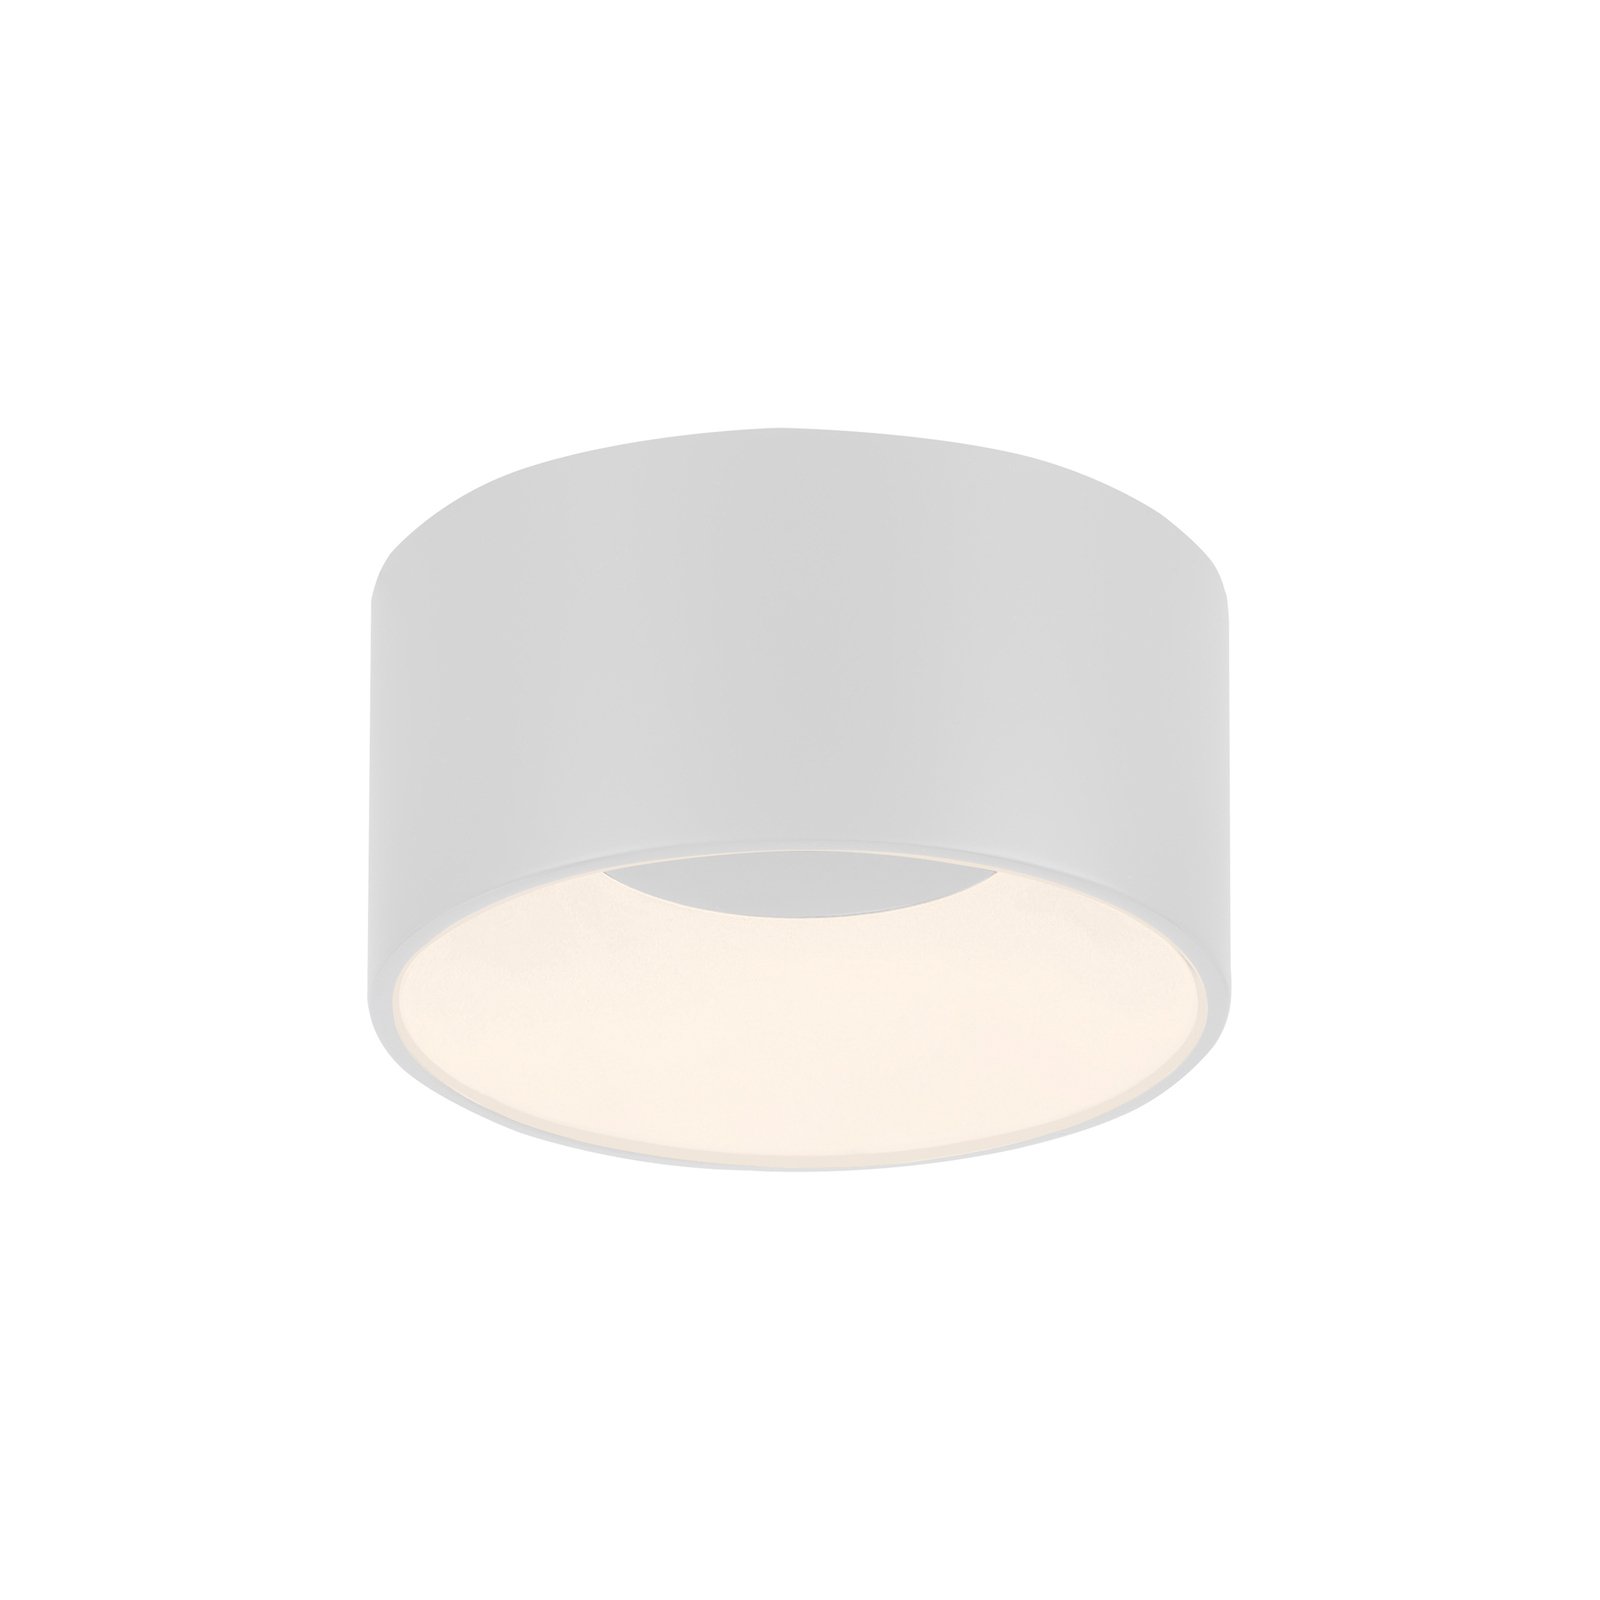 JUST LIGHT. LED осветление за таван Tanika, бяло, Ø 16 cm, с възможност за